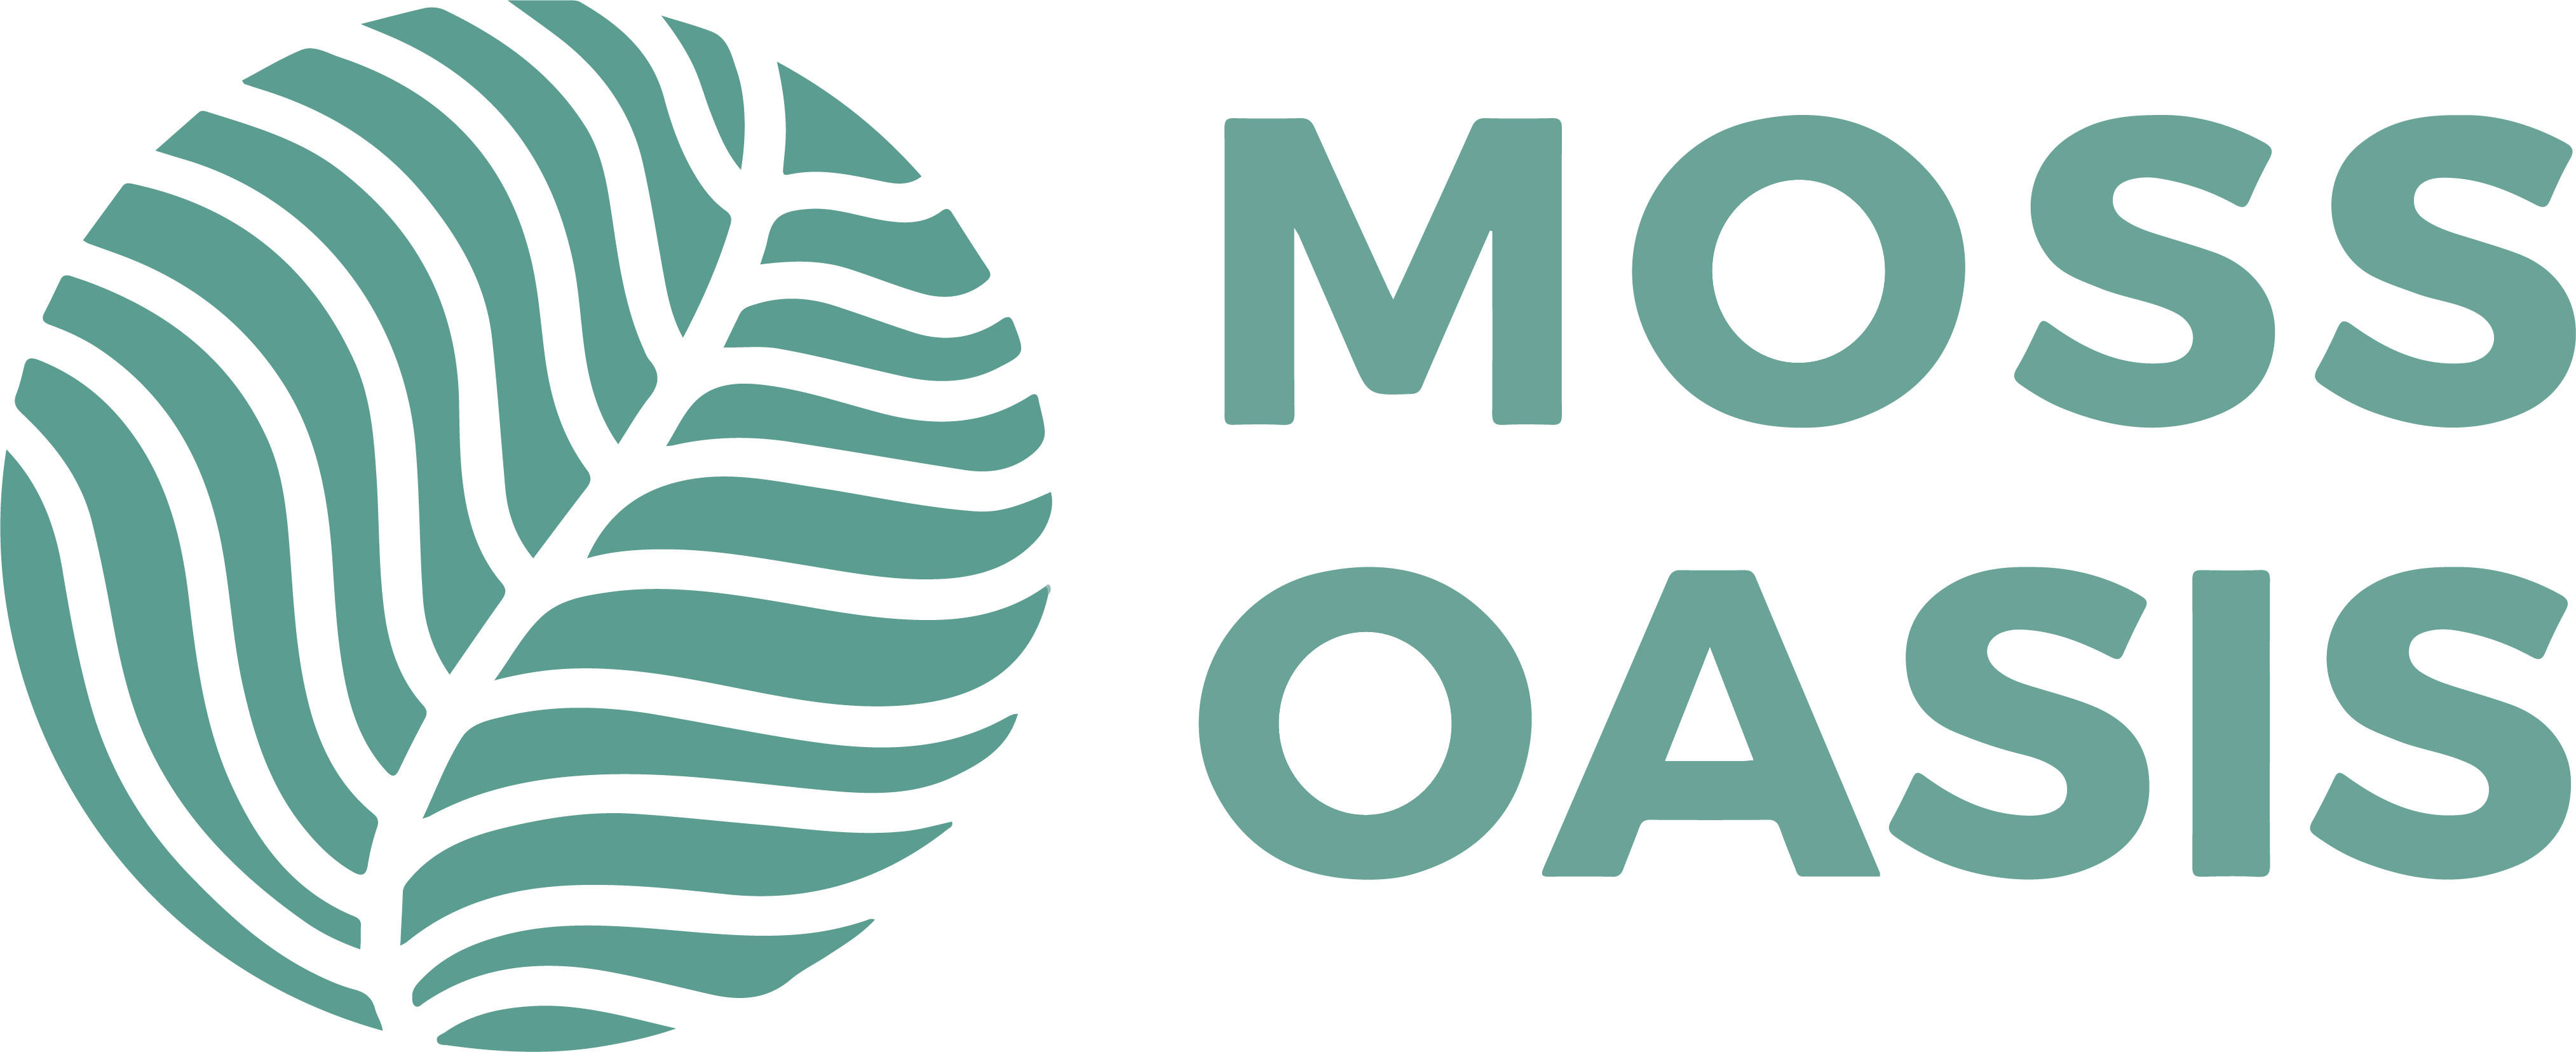 Mossoasis.com